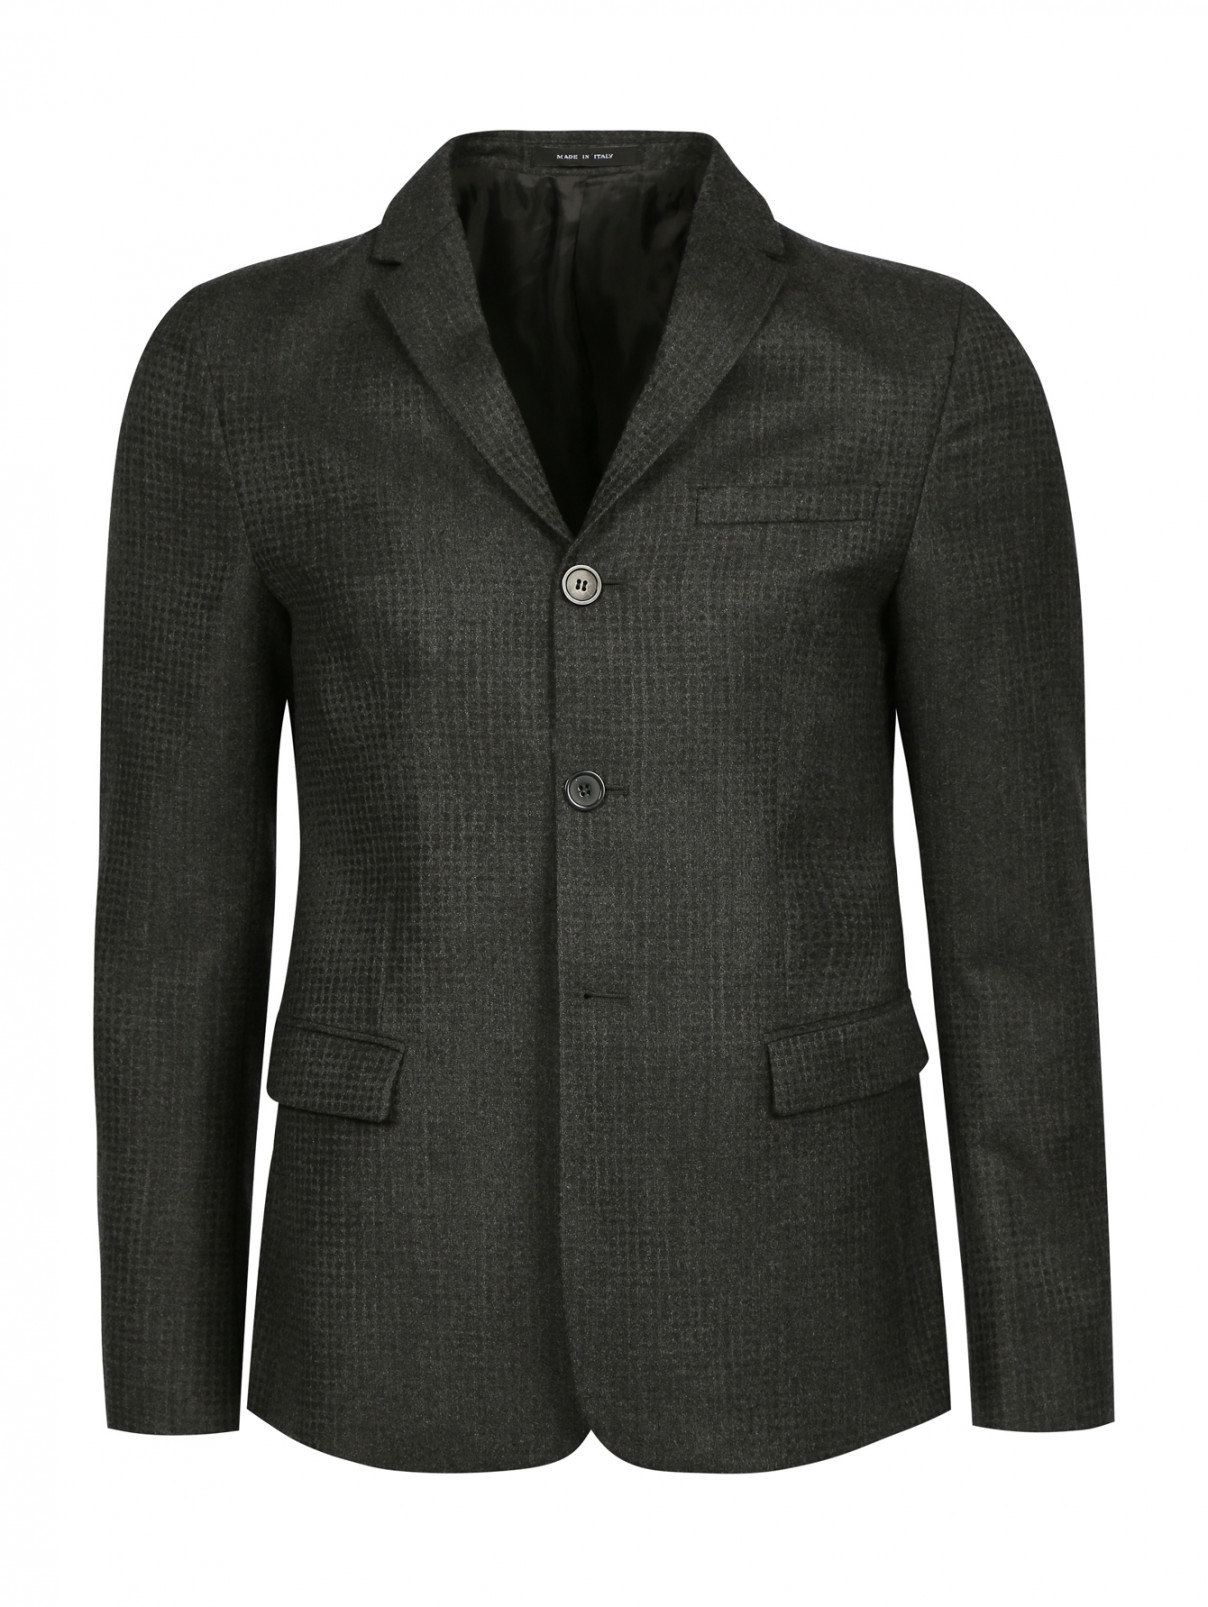 Однобортный пиджак из шерсти Emporio Armani  –  Общий вид  – Цвет:  Коричневый